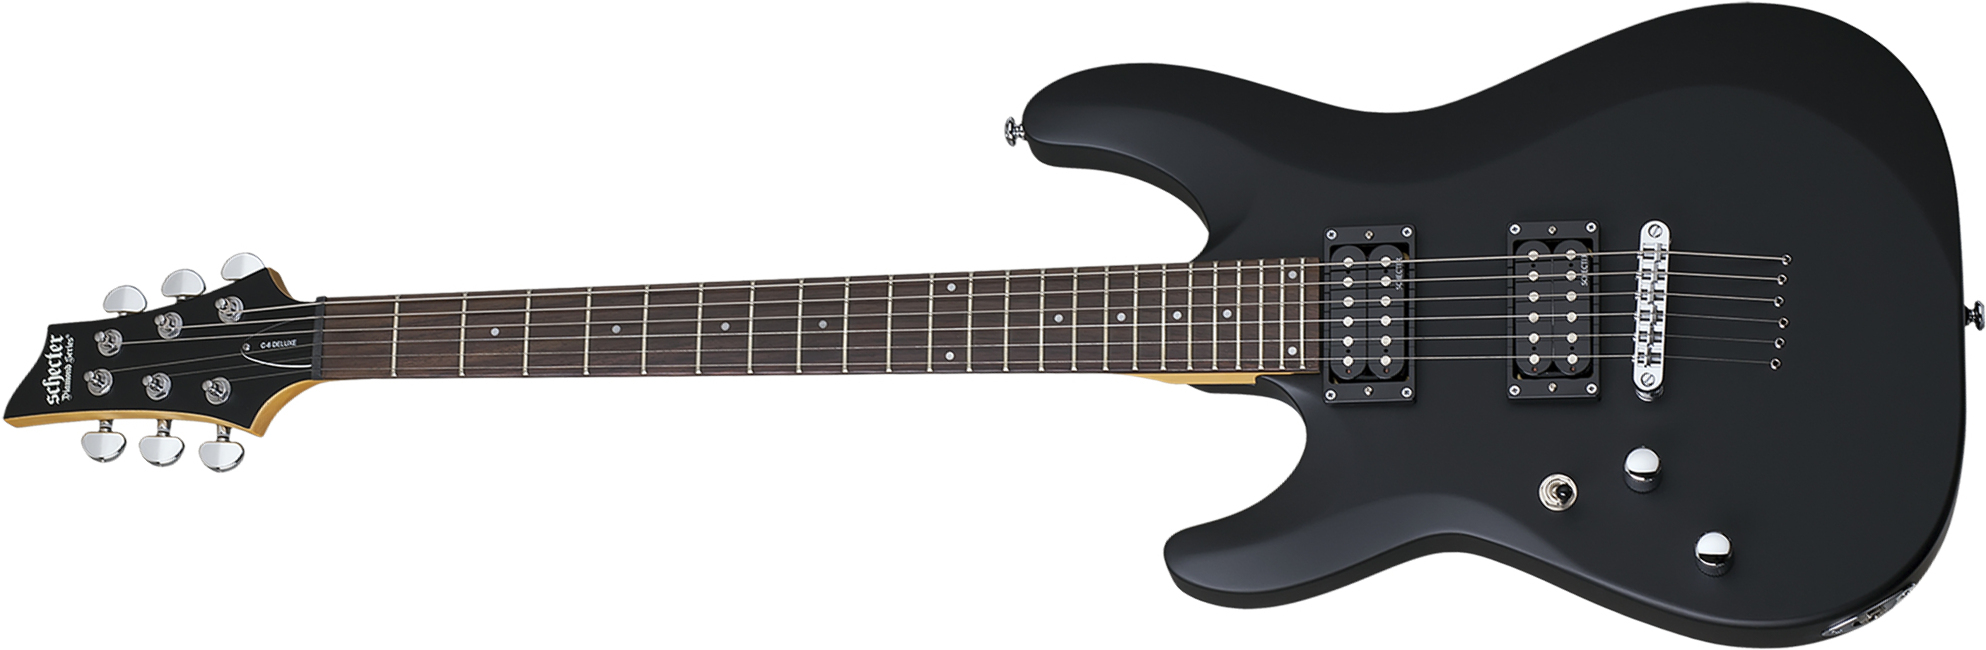 Schecter C-6 Deluxe Lh Gaucher 2h Ht Rw - Satin Black - Guitarra electrica para zurdos - Main picture